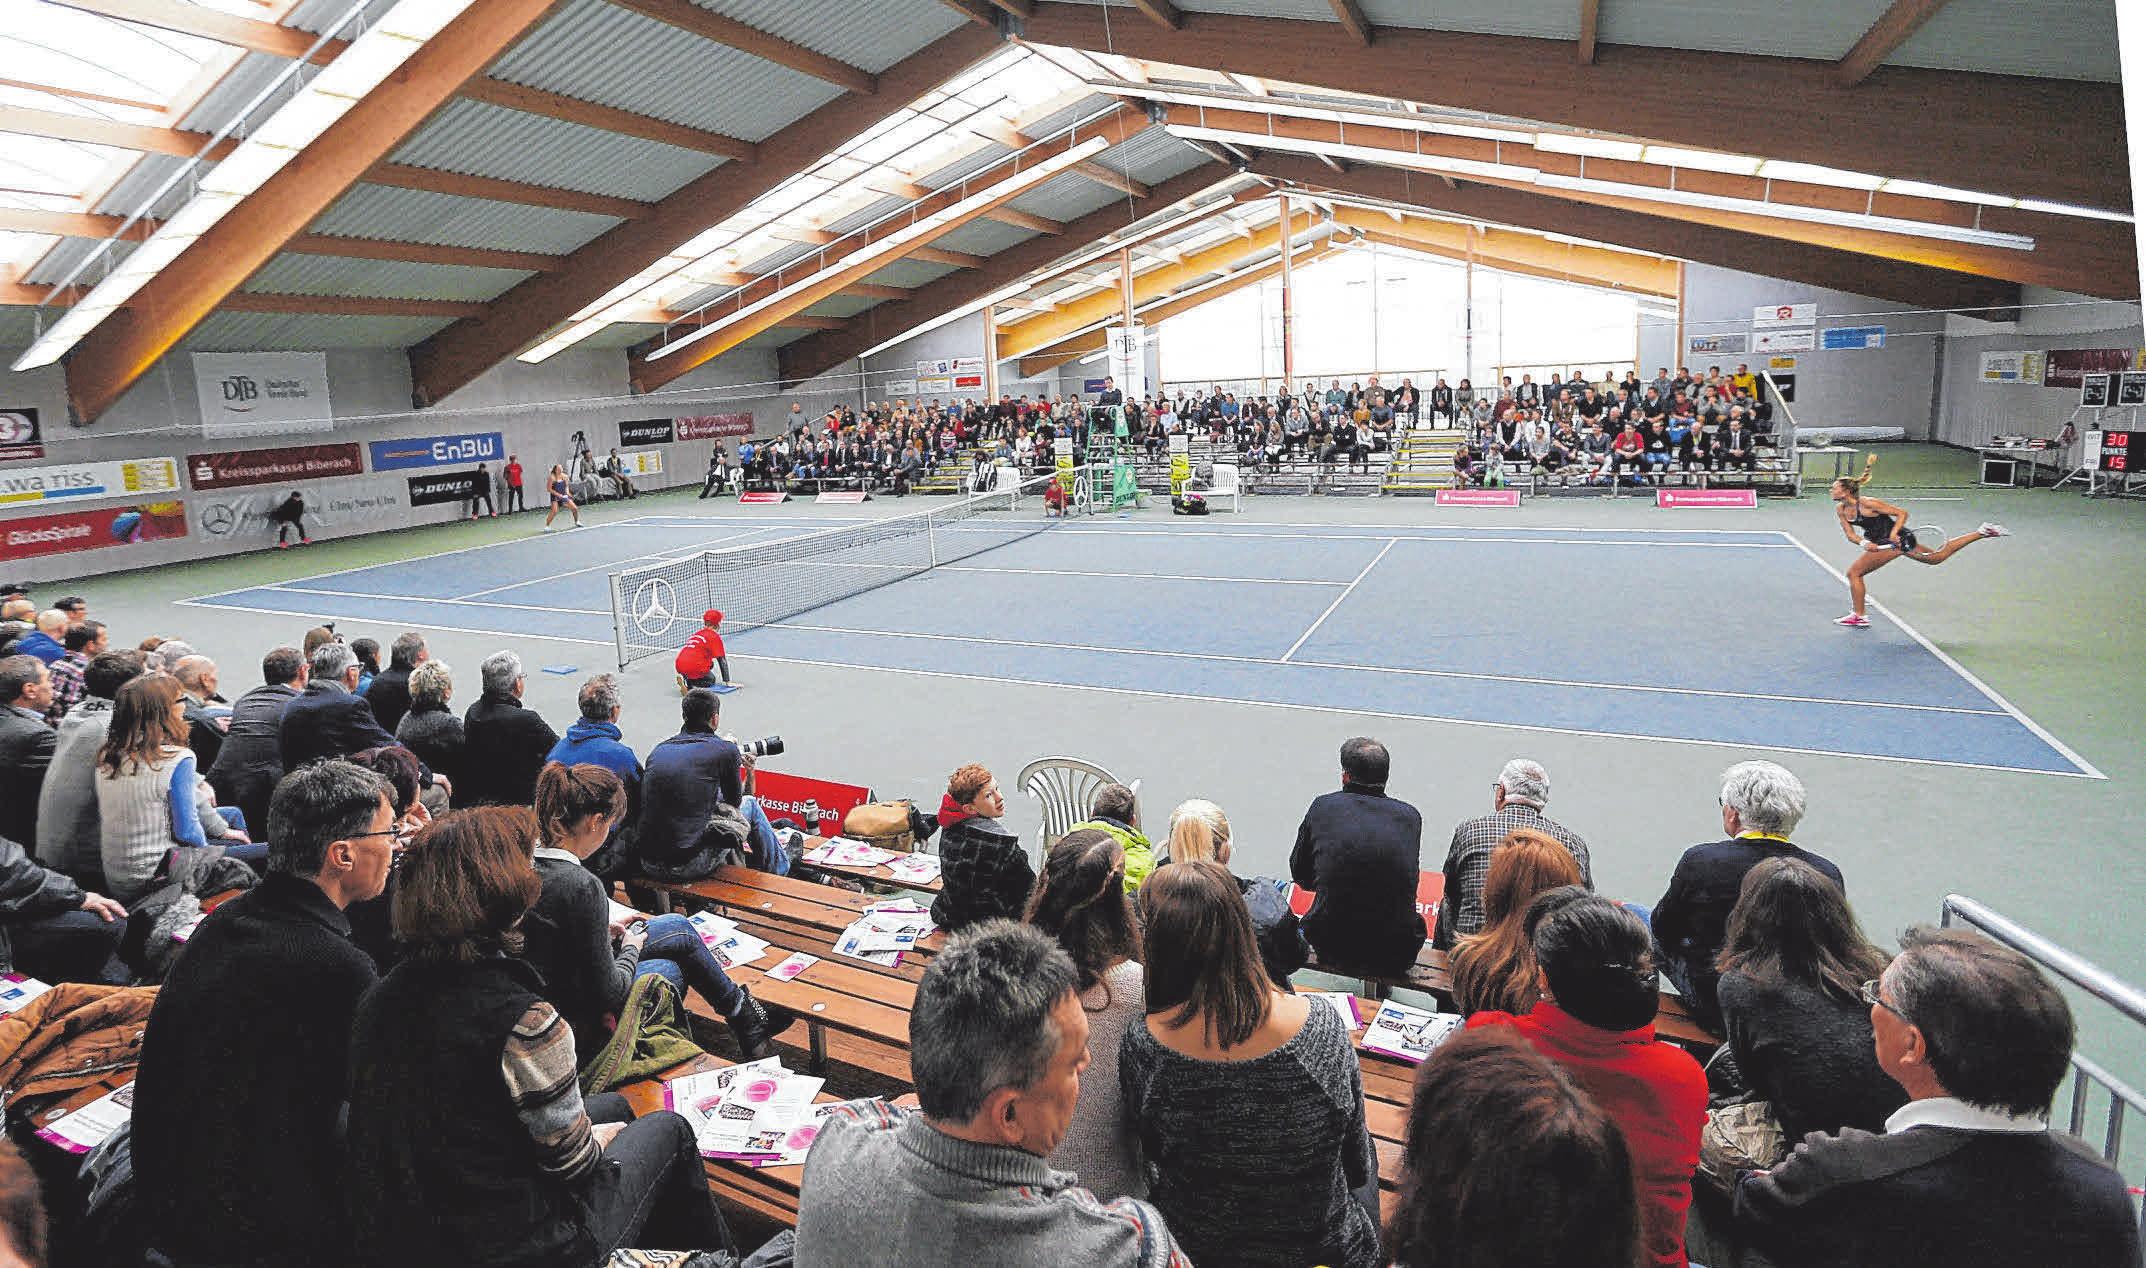 WTB Tennisturnier in der Biberacher Halle: Nationale WTB Titelkämpfe unter Corona-Bedingungen-4